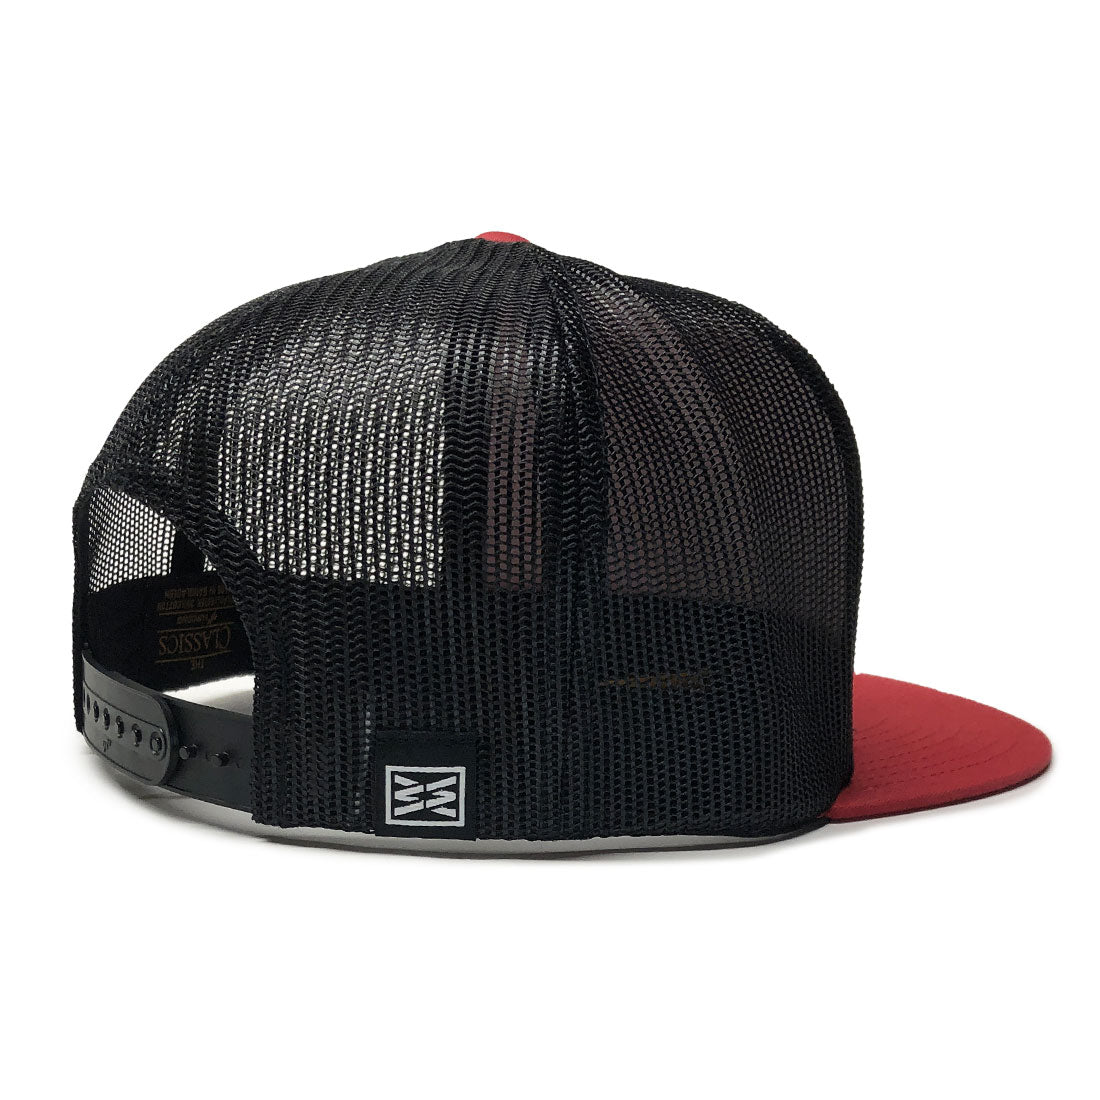 RANGE FLAT BILL TRUCKER HAT IN RED/BLACK